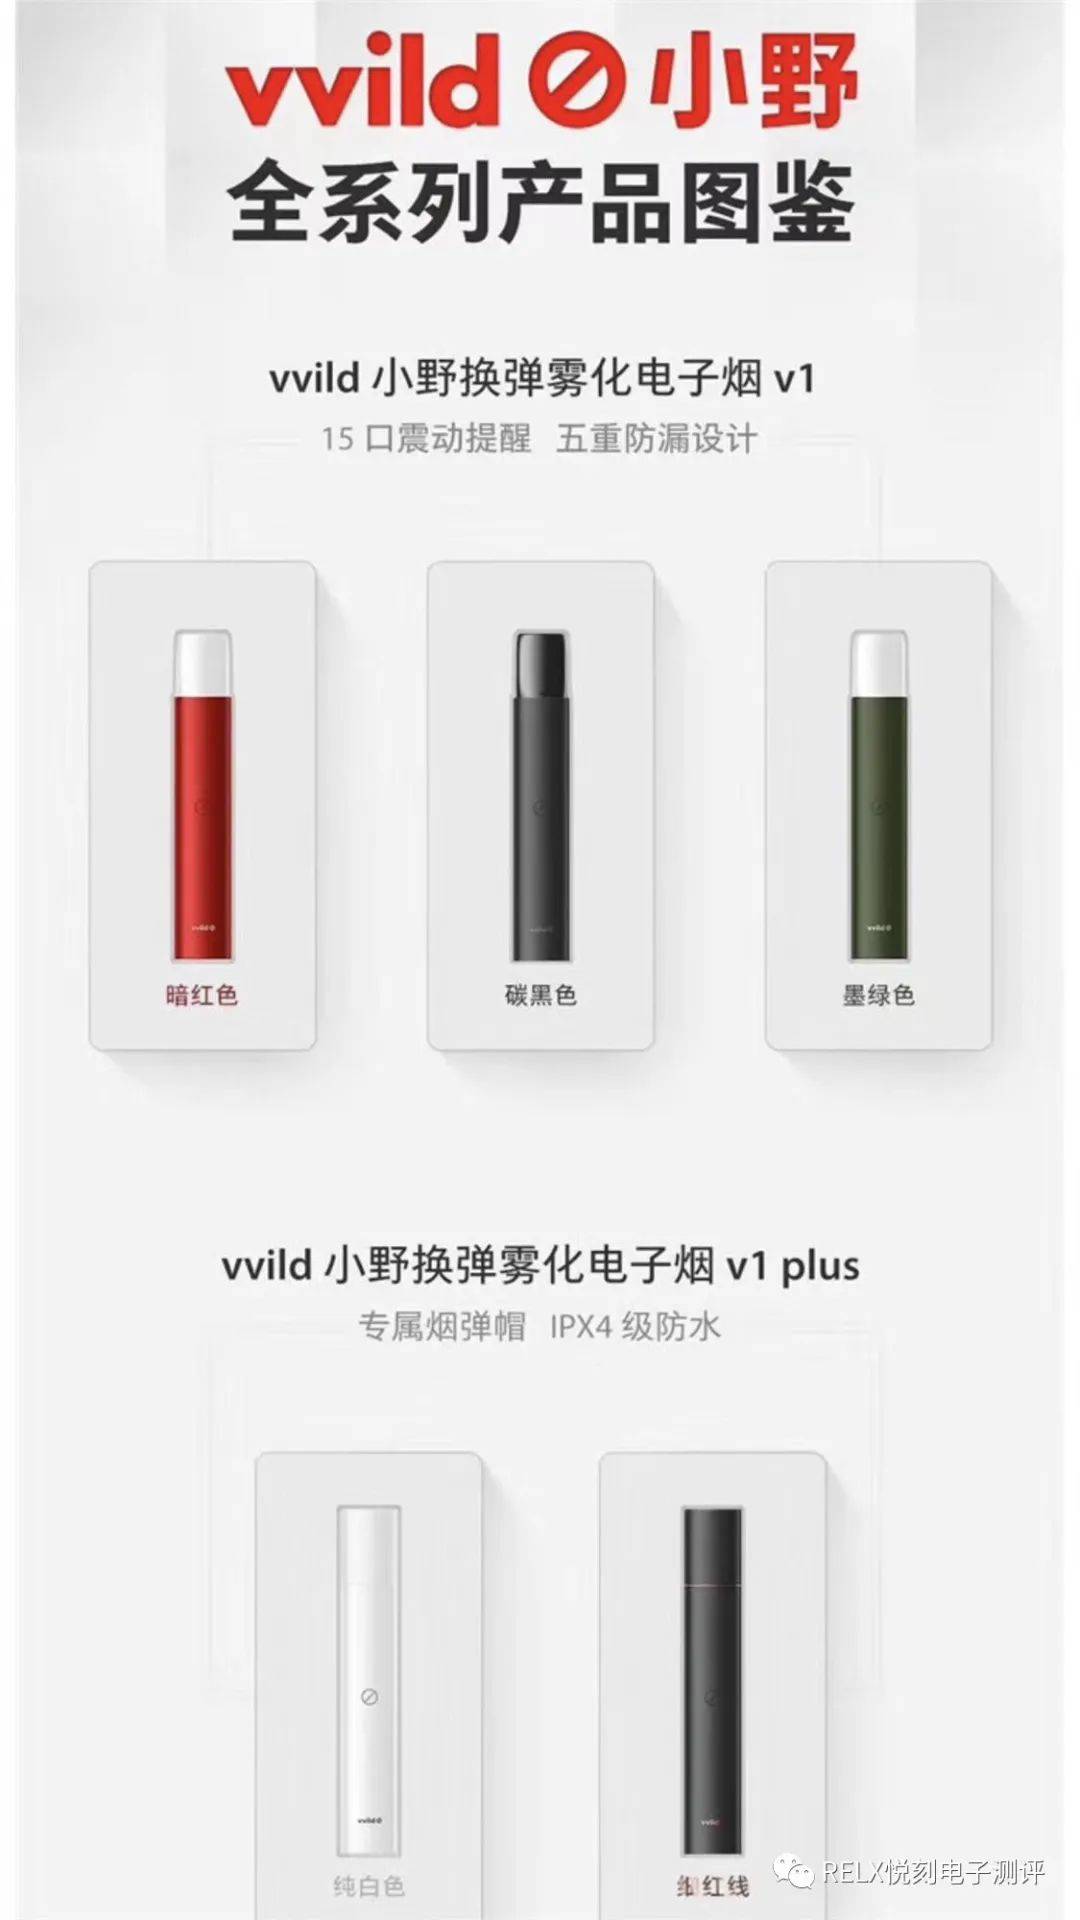 vvild小野电子烟产品有哪些？有哪些区别？分别价格是多少钱？